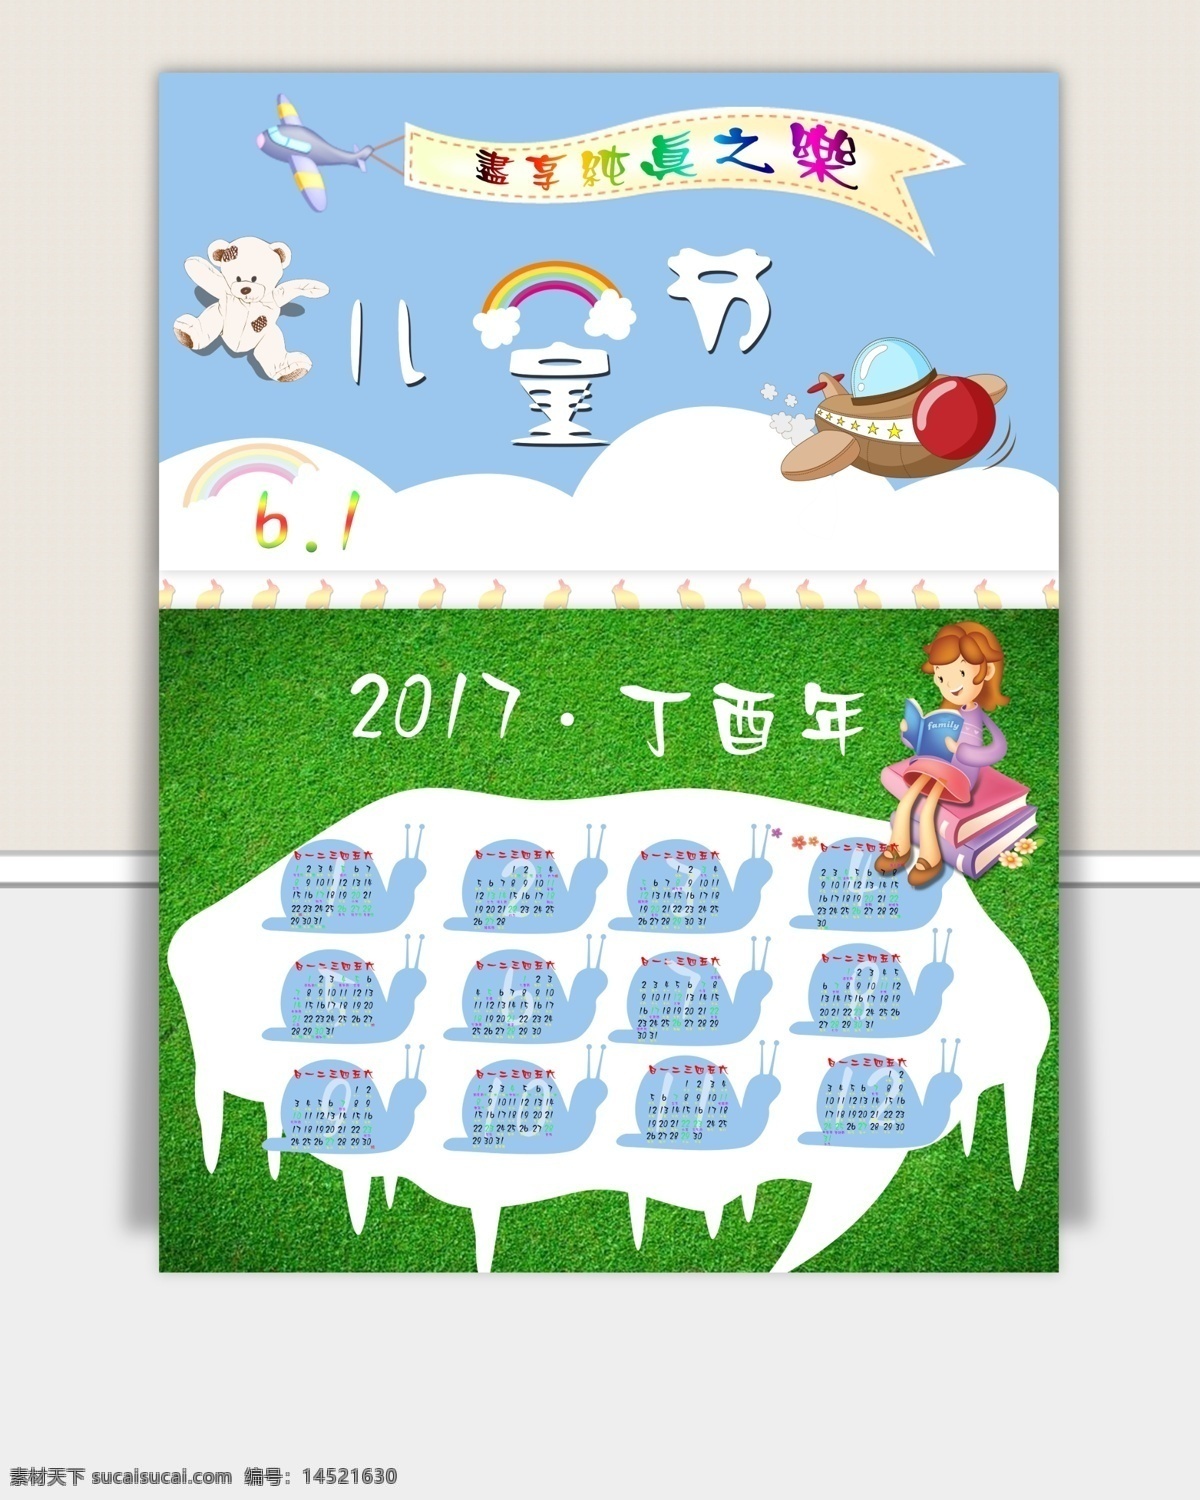 儿童节 卡通日历 6.1 六一 2017 丁酉年 日历 卡通 人物 飞机 横幅 熊 彩虹 云